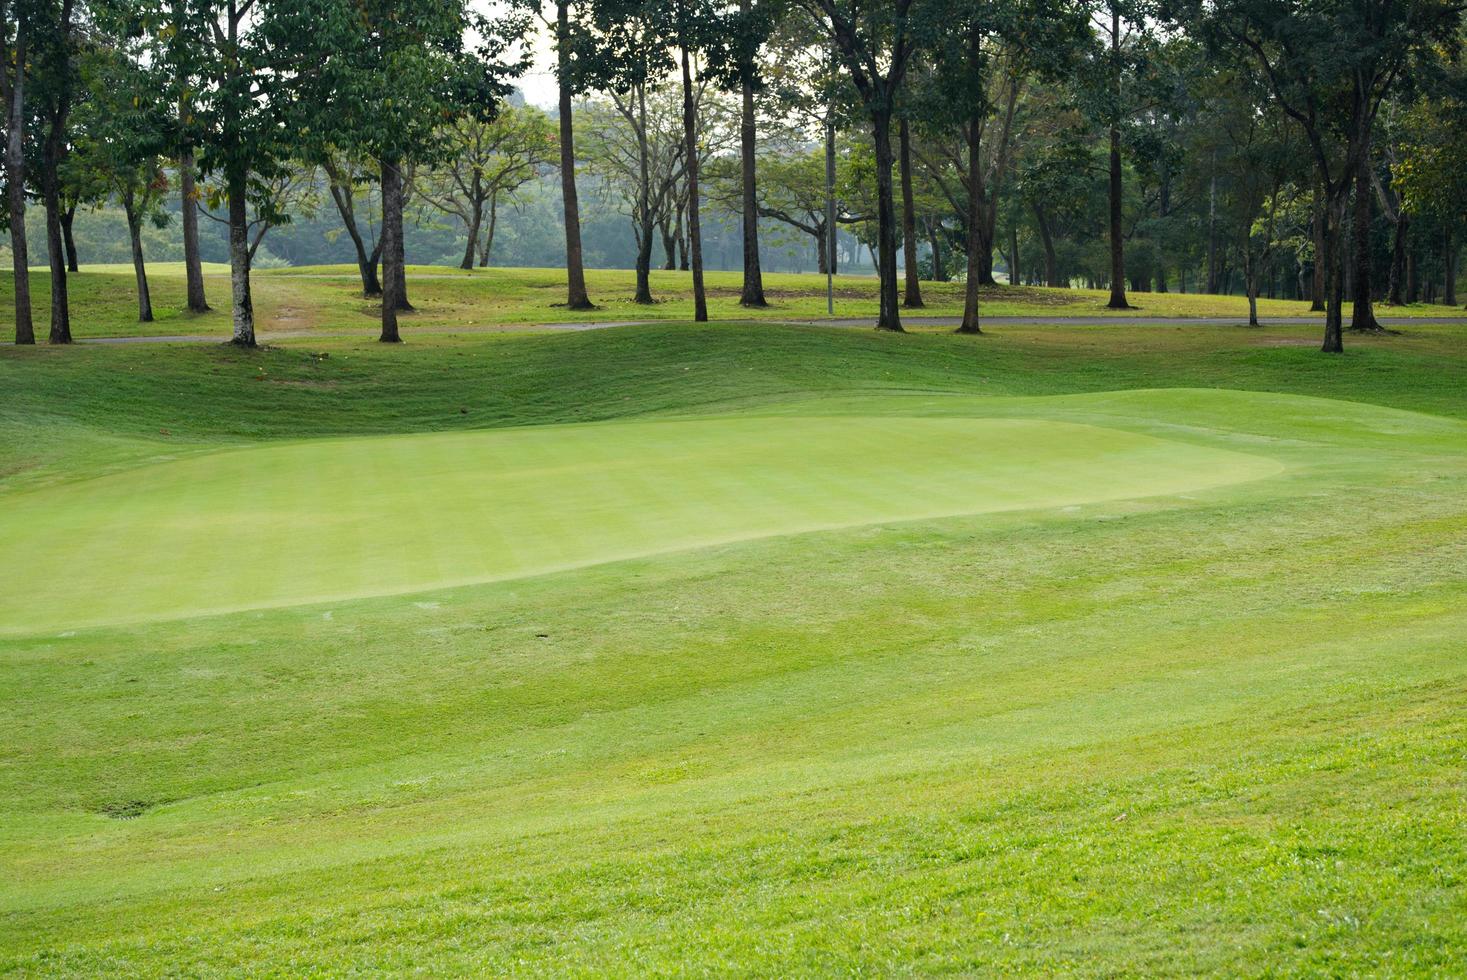 beau parcours de golf en herbe verte photo